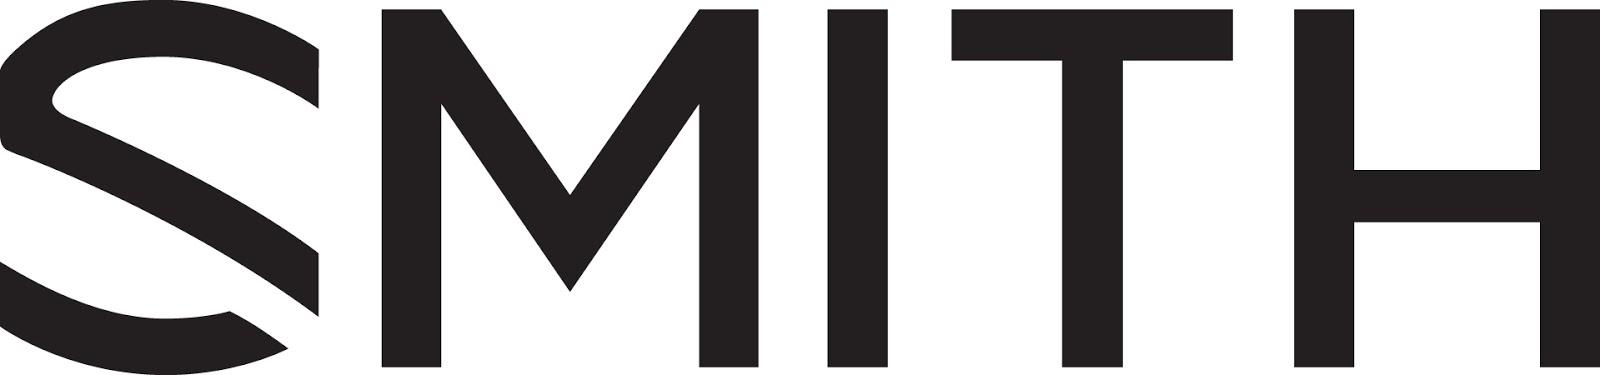 Smith Logo - Smith Logo -